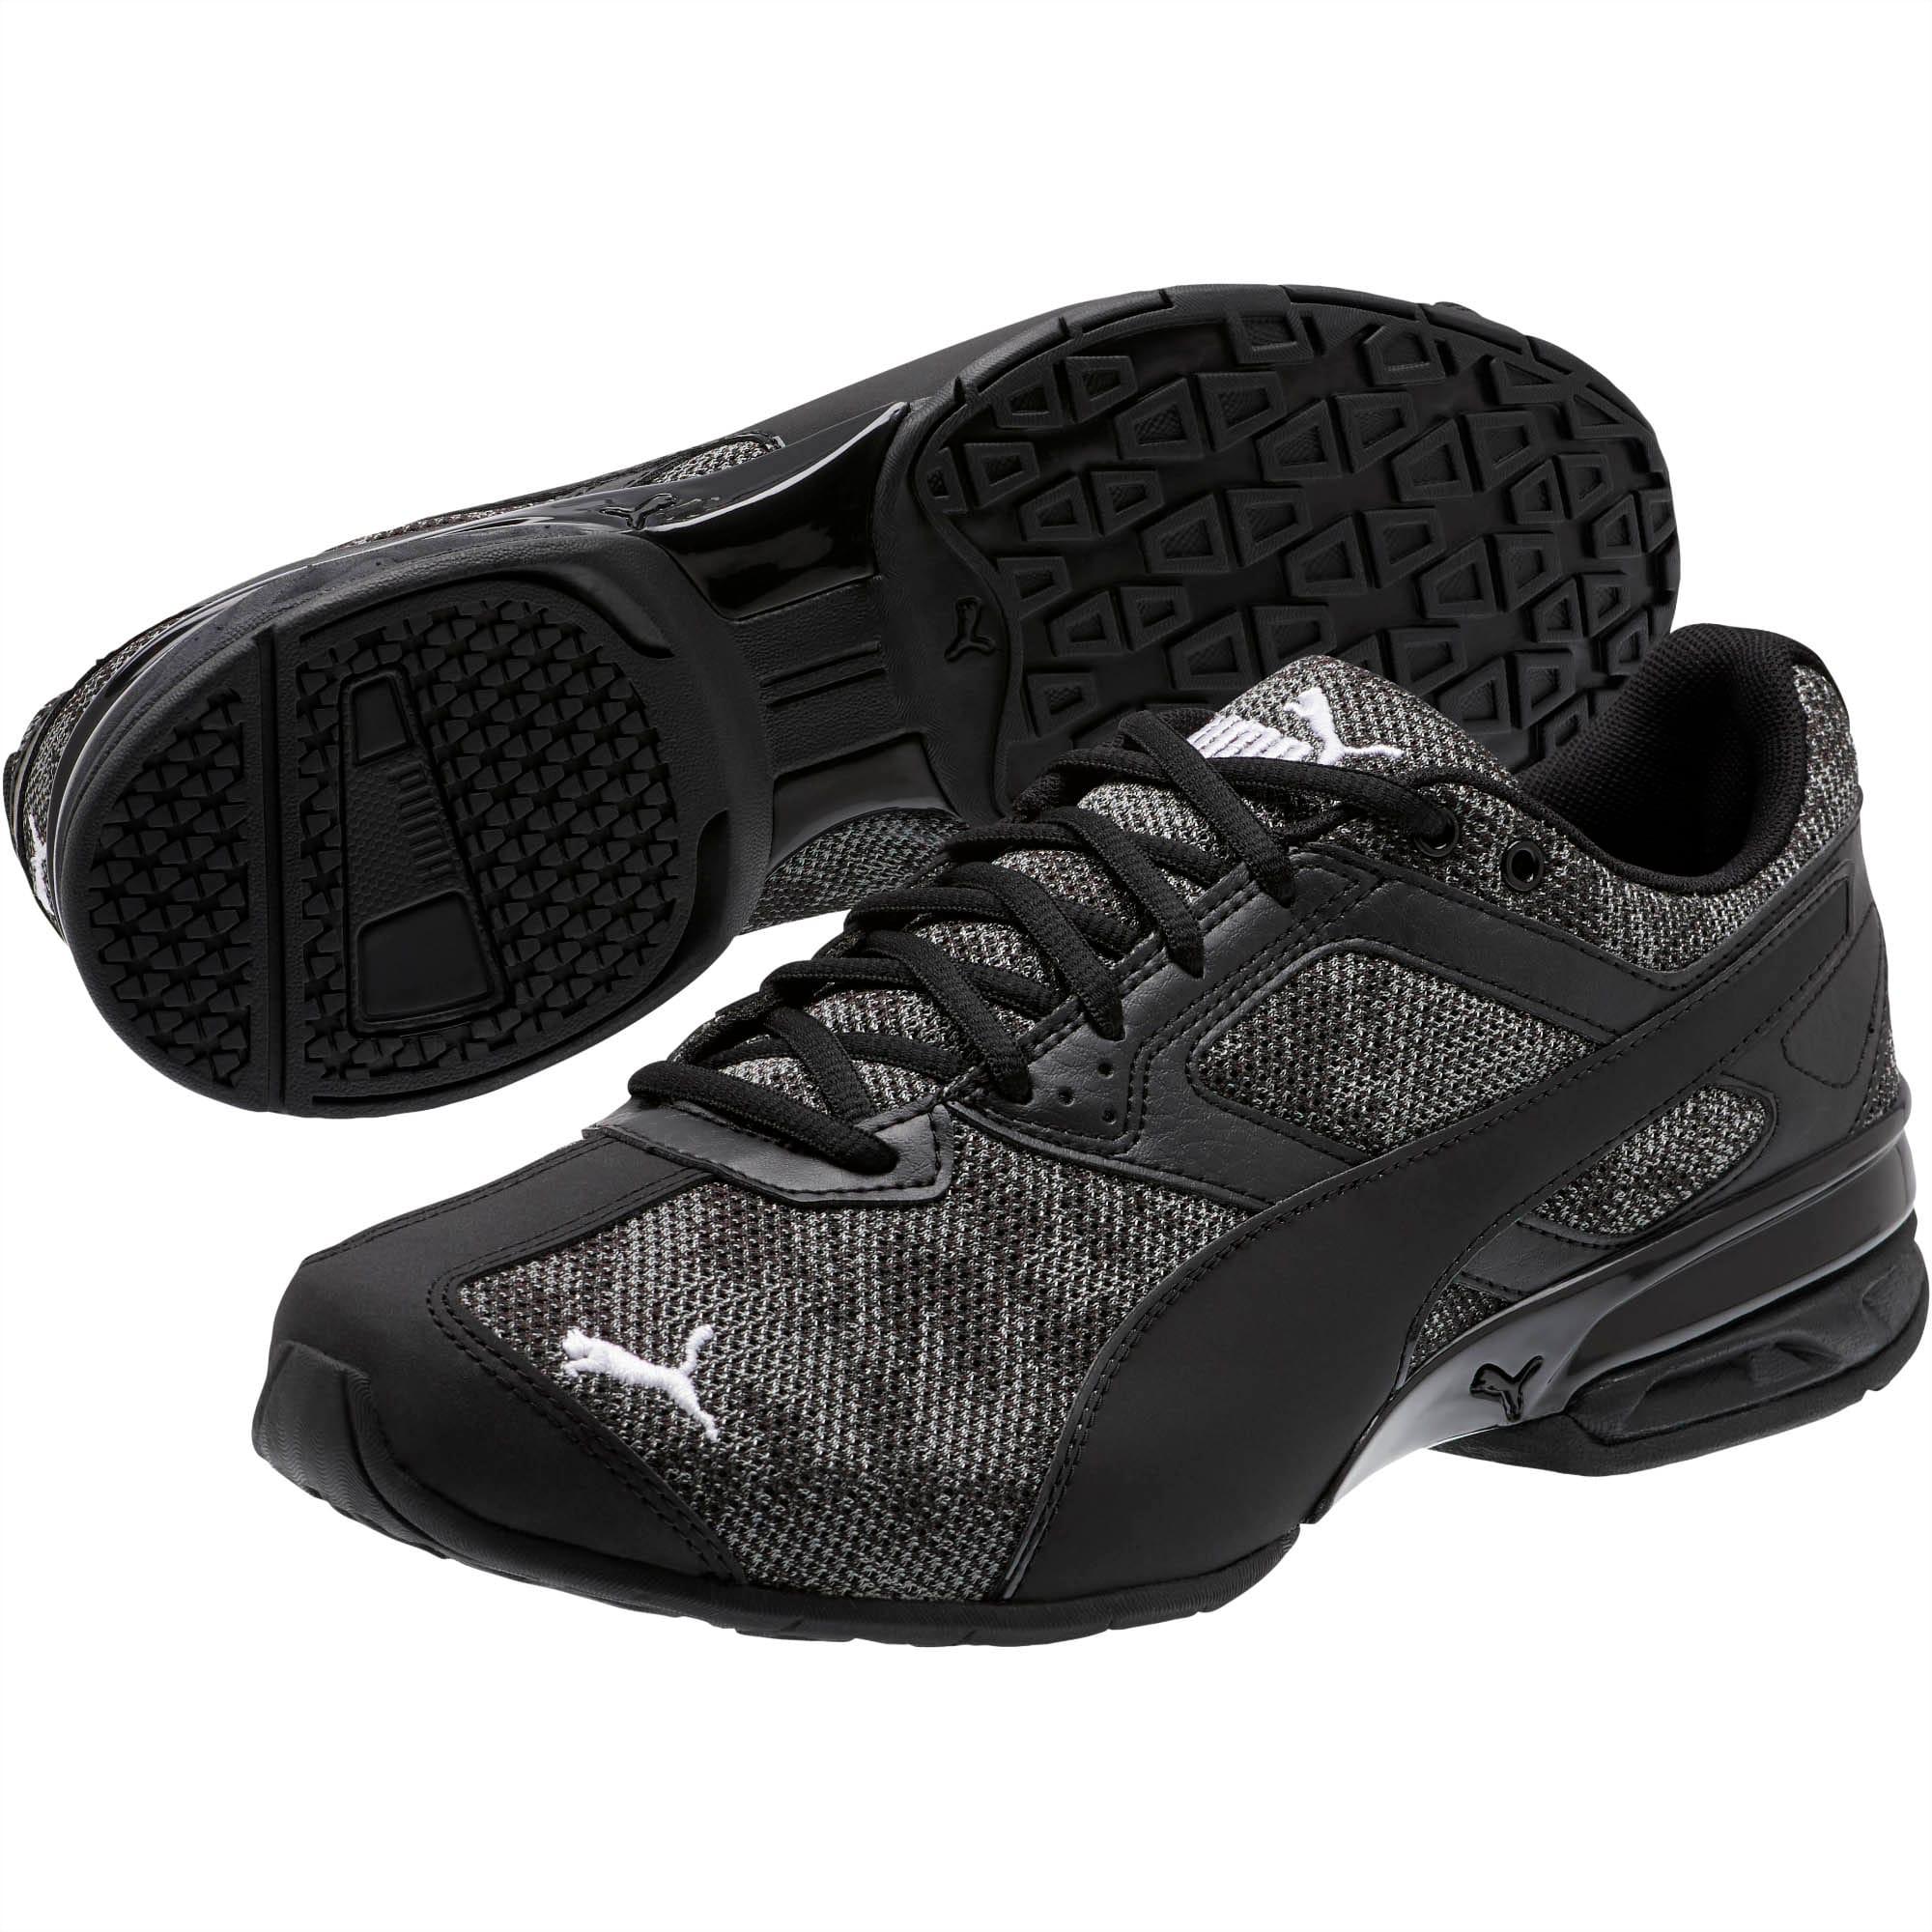 PUMA Rubber Tazon 6 Camo Mesh Sneakers in 01 (Black) for Men - Save 30% ...